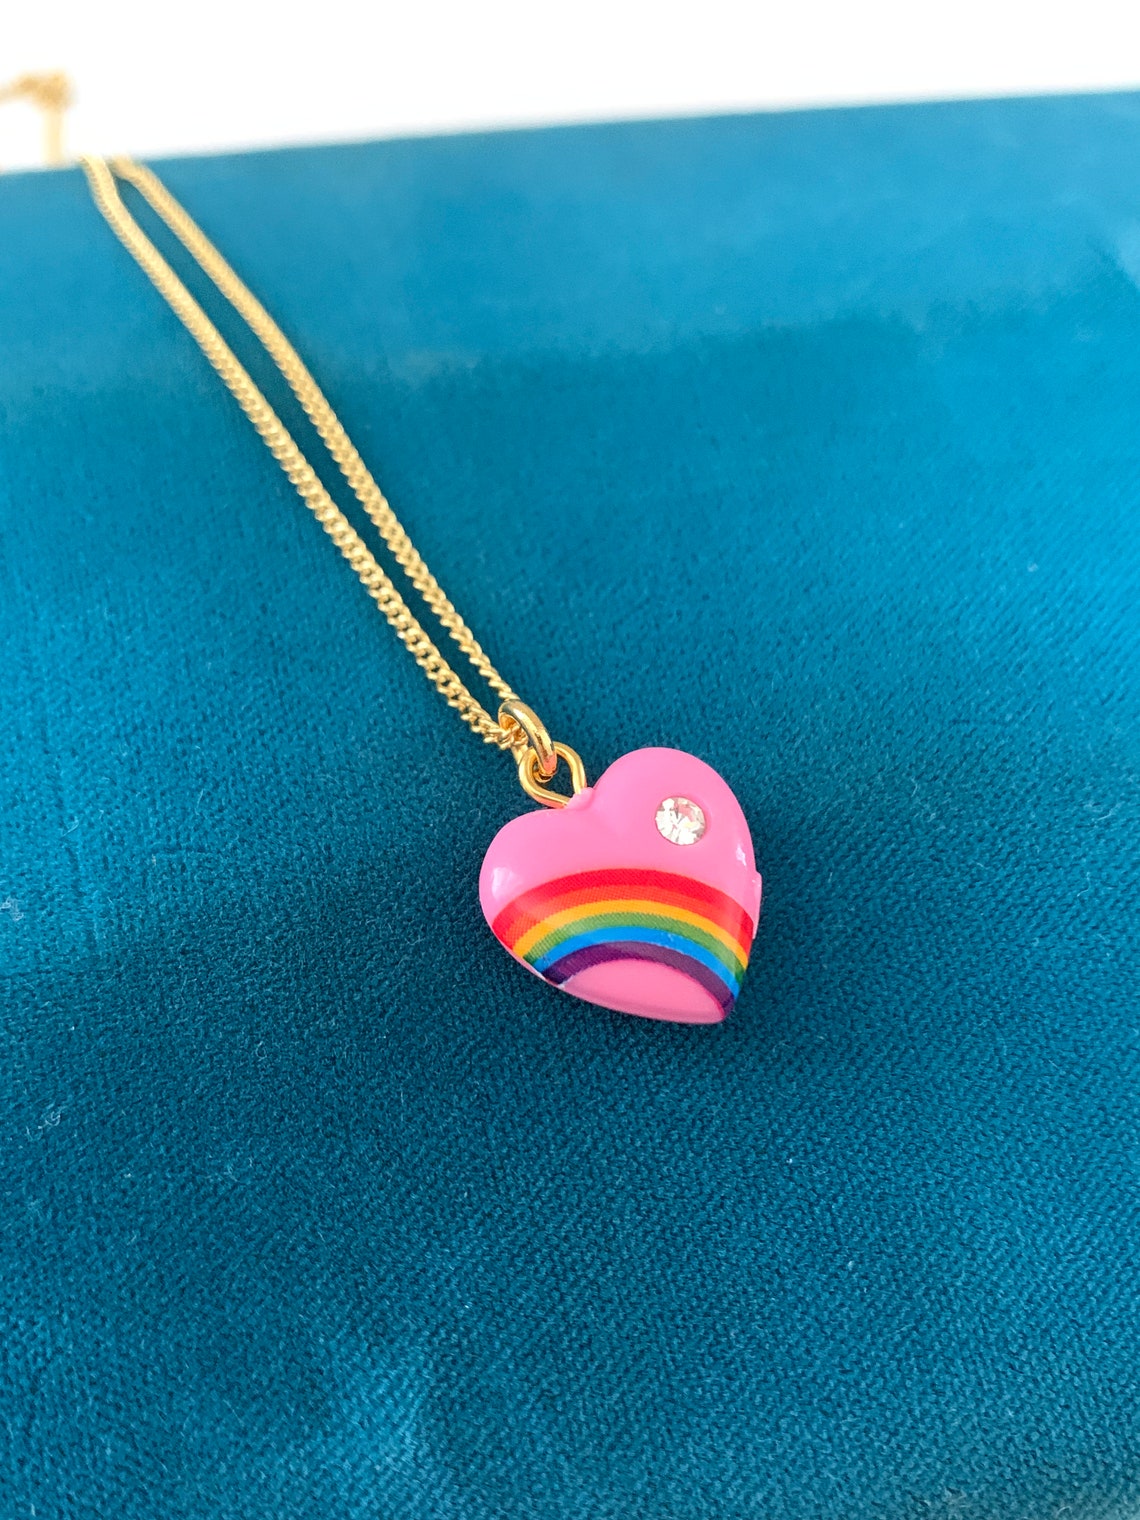 Mini Rainbow Heart Necklace - Etsy